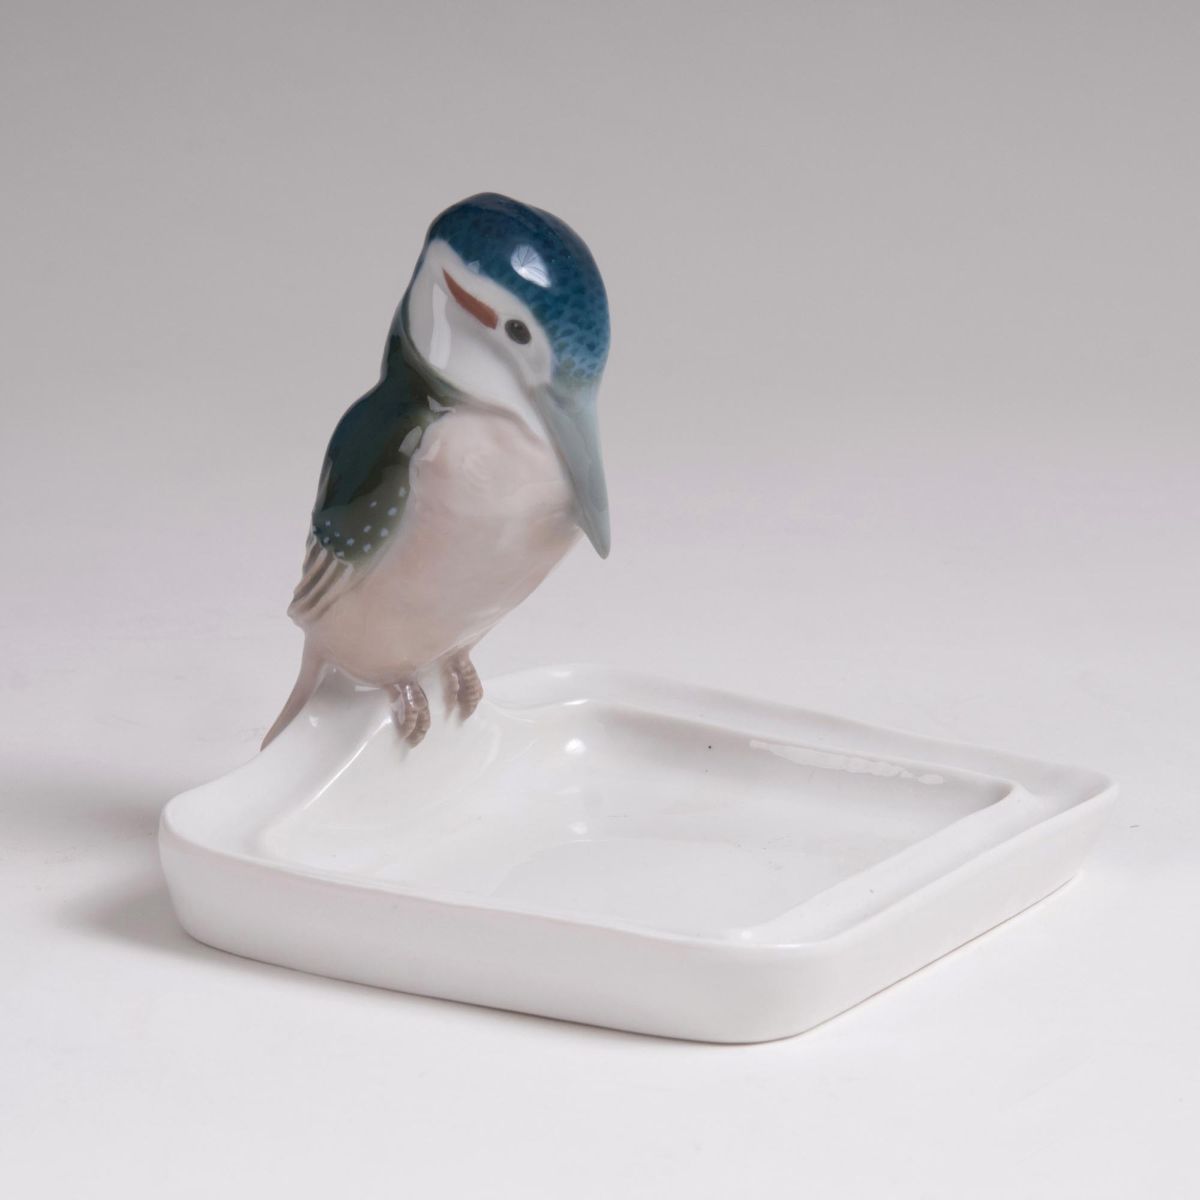 An Art Nouveau Figure 'Kingfisher on a Bowl'